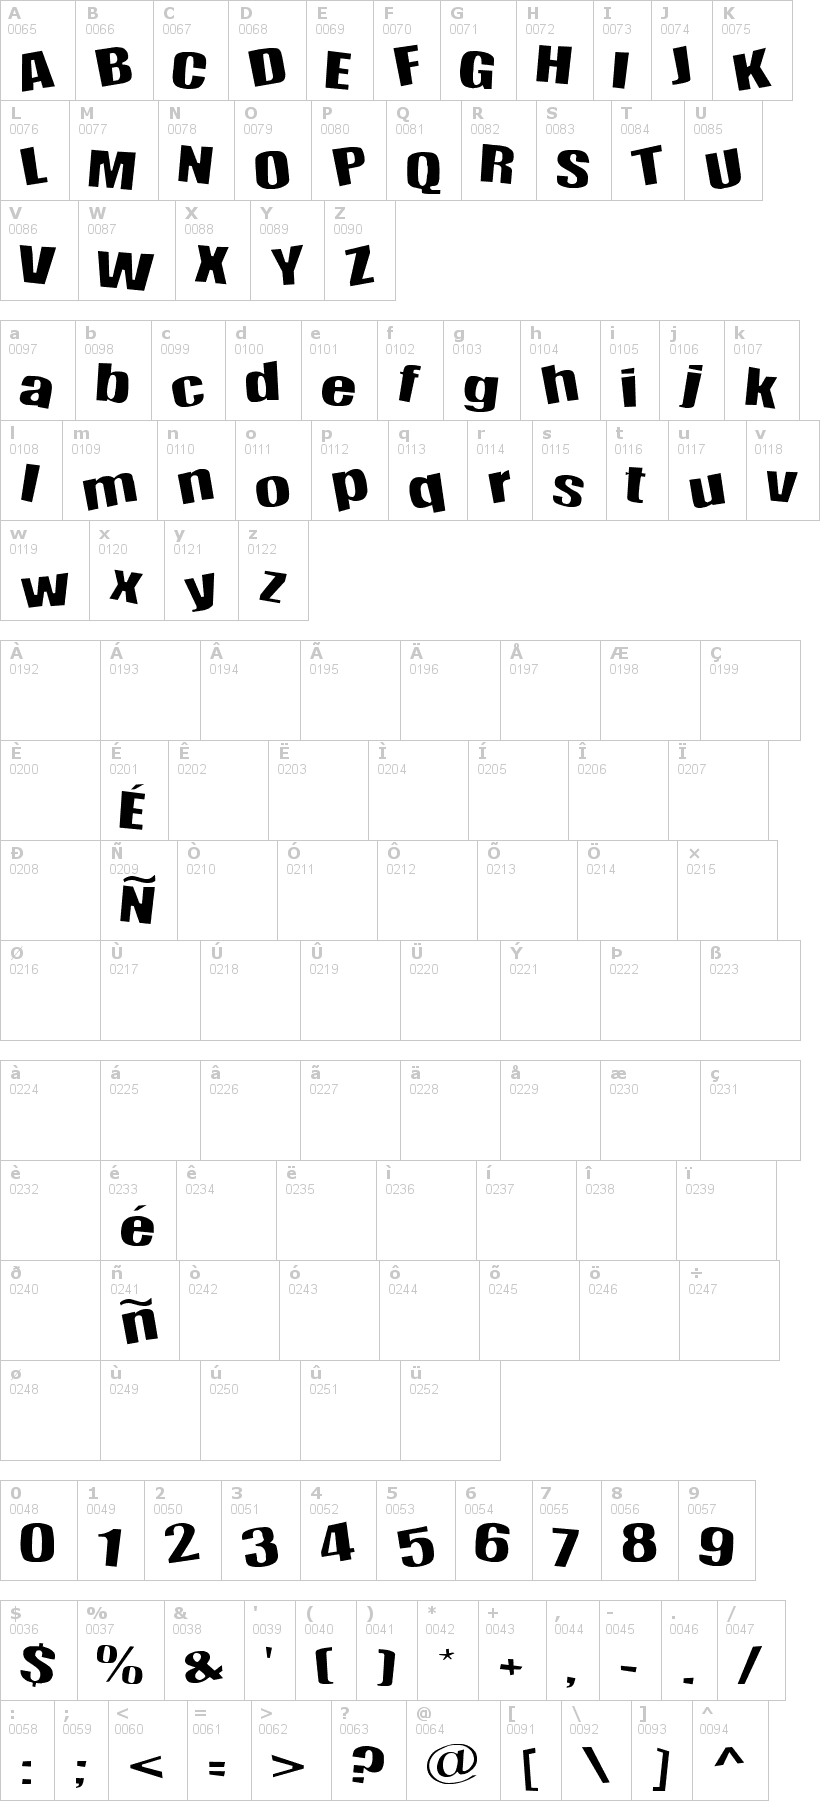 Lettere dell'alfabeto del font happy-happy-joy-joy con le quali è possibile realizzare adesivi prespaziati